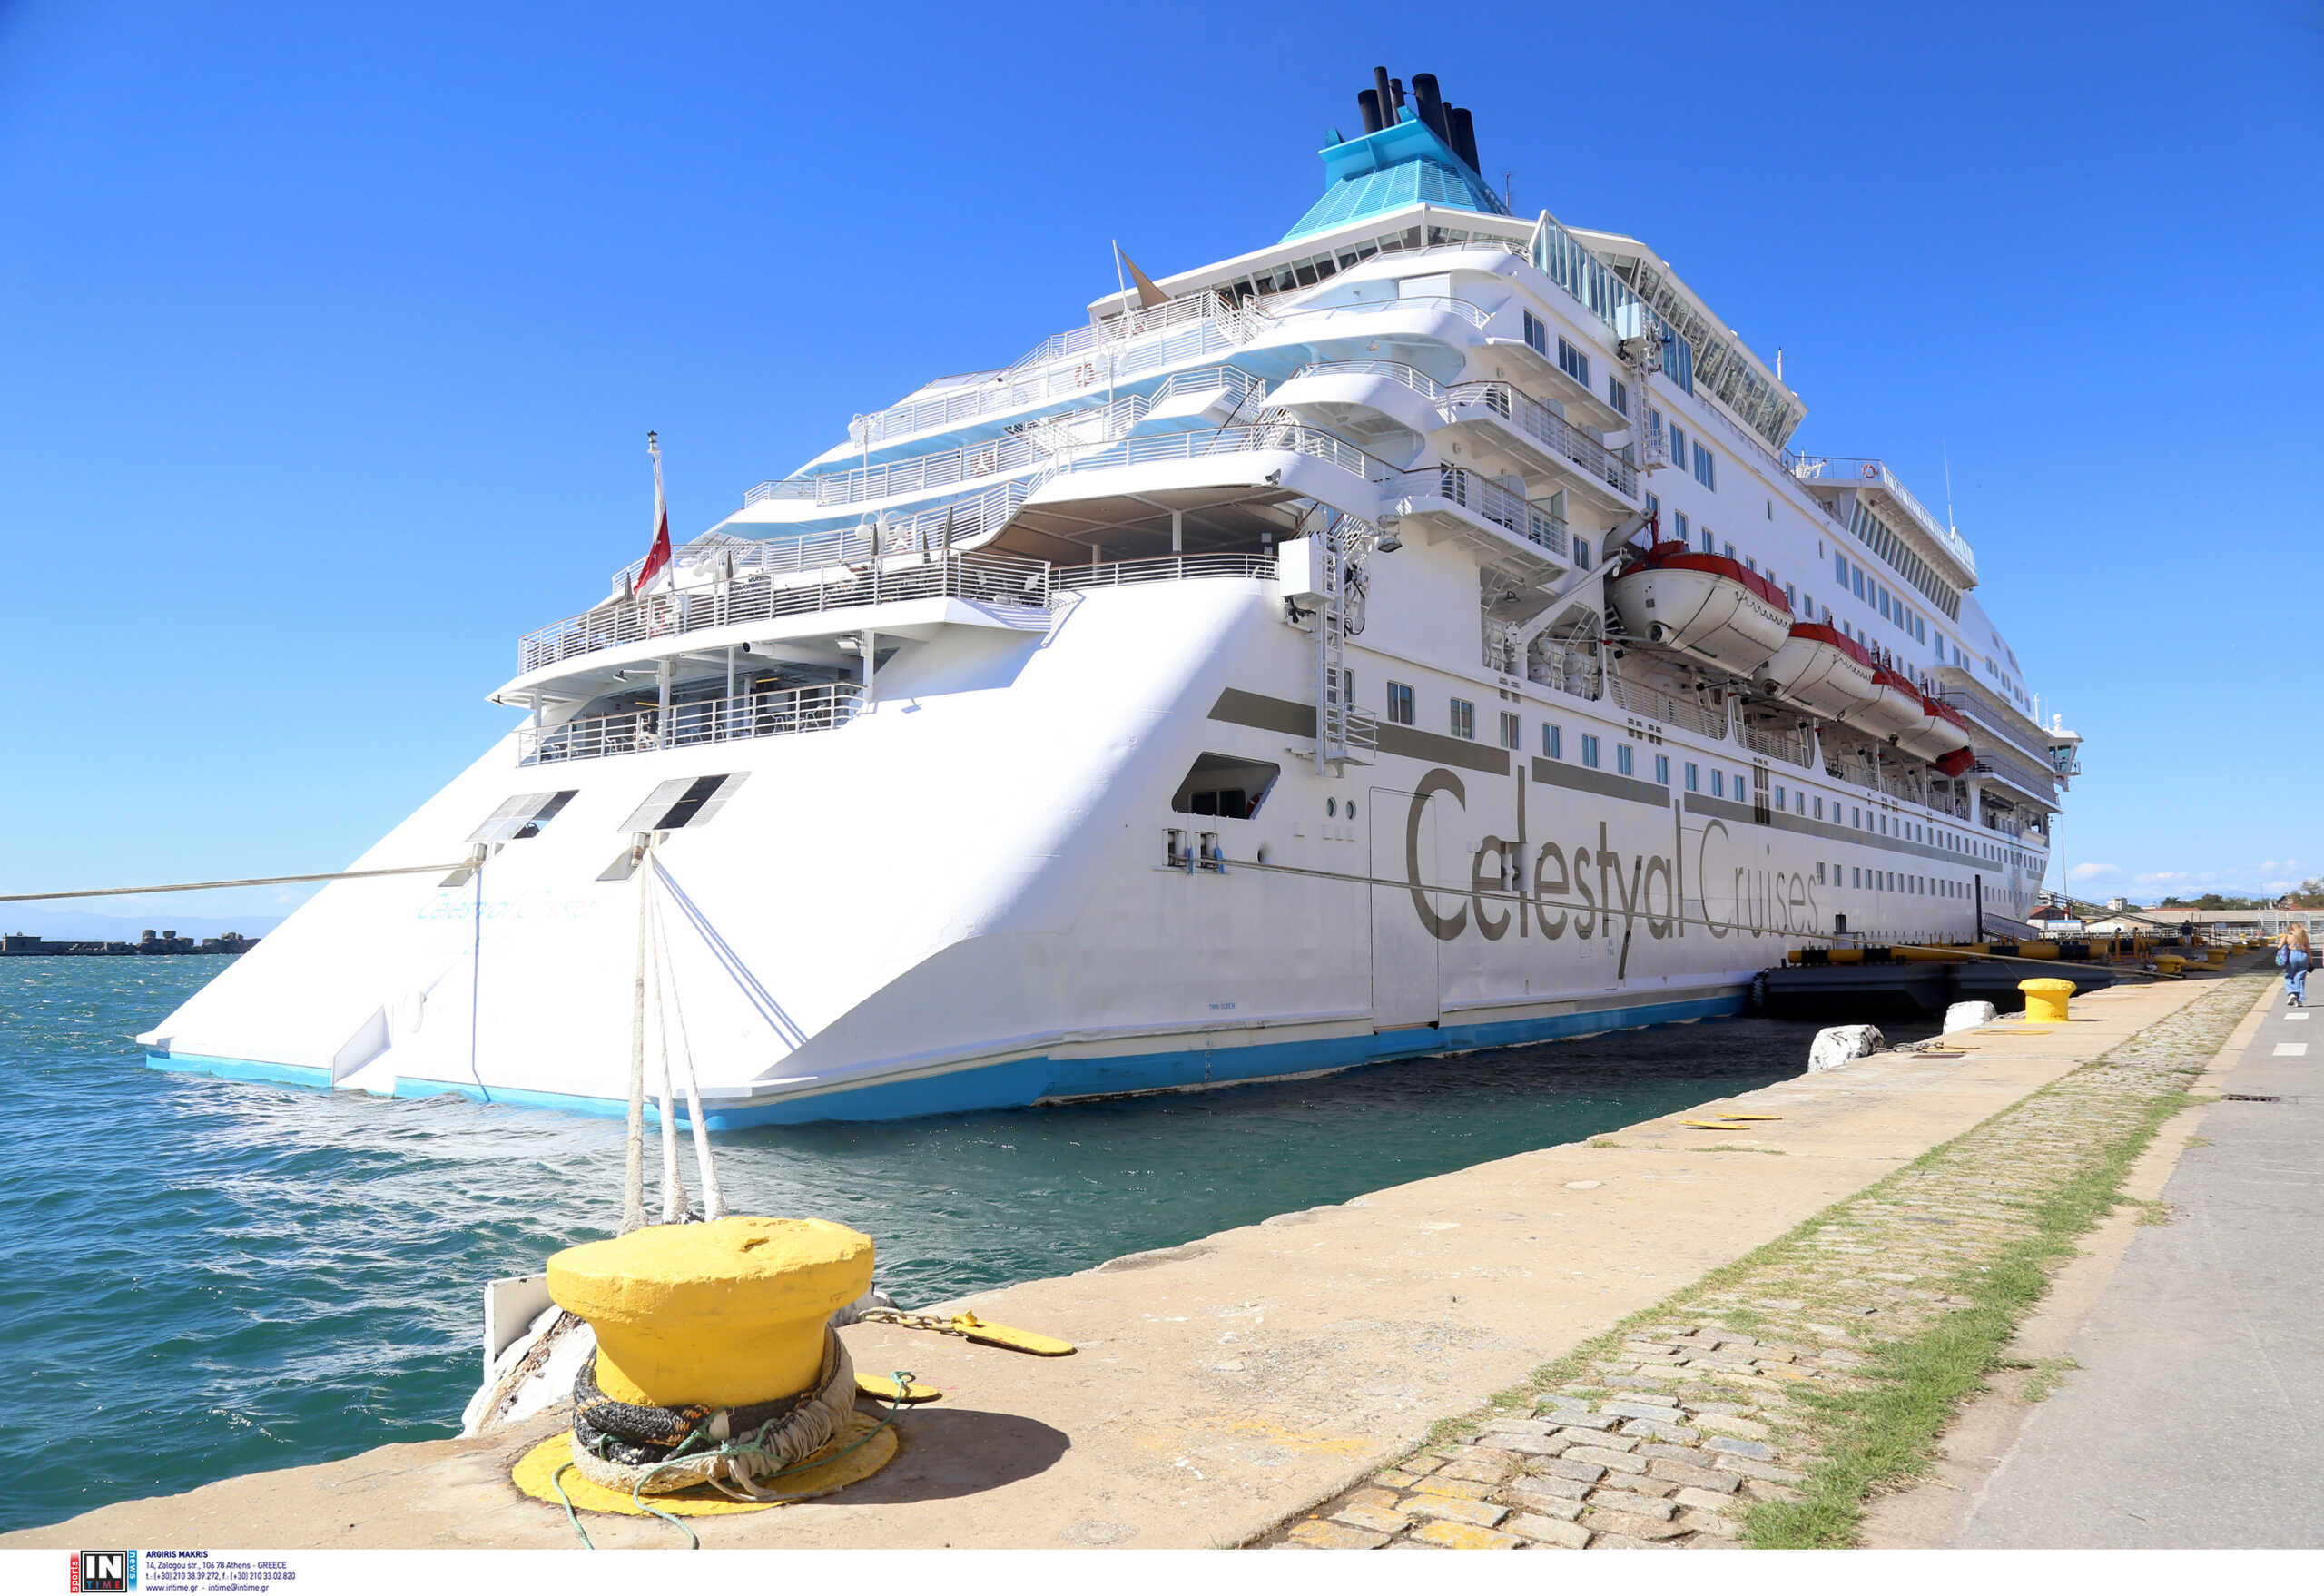 Θεσσαλονίκη: Έδεσε στο λιμάνι το κρουαζιερόπλοιο «Celestyal Crystal» – Δείτε το εσωτερικό του